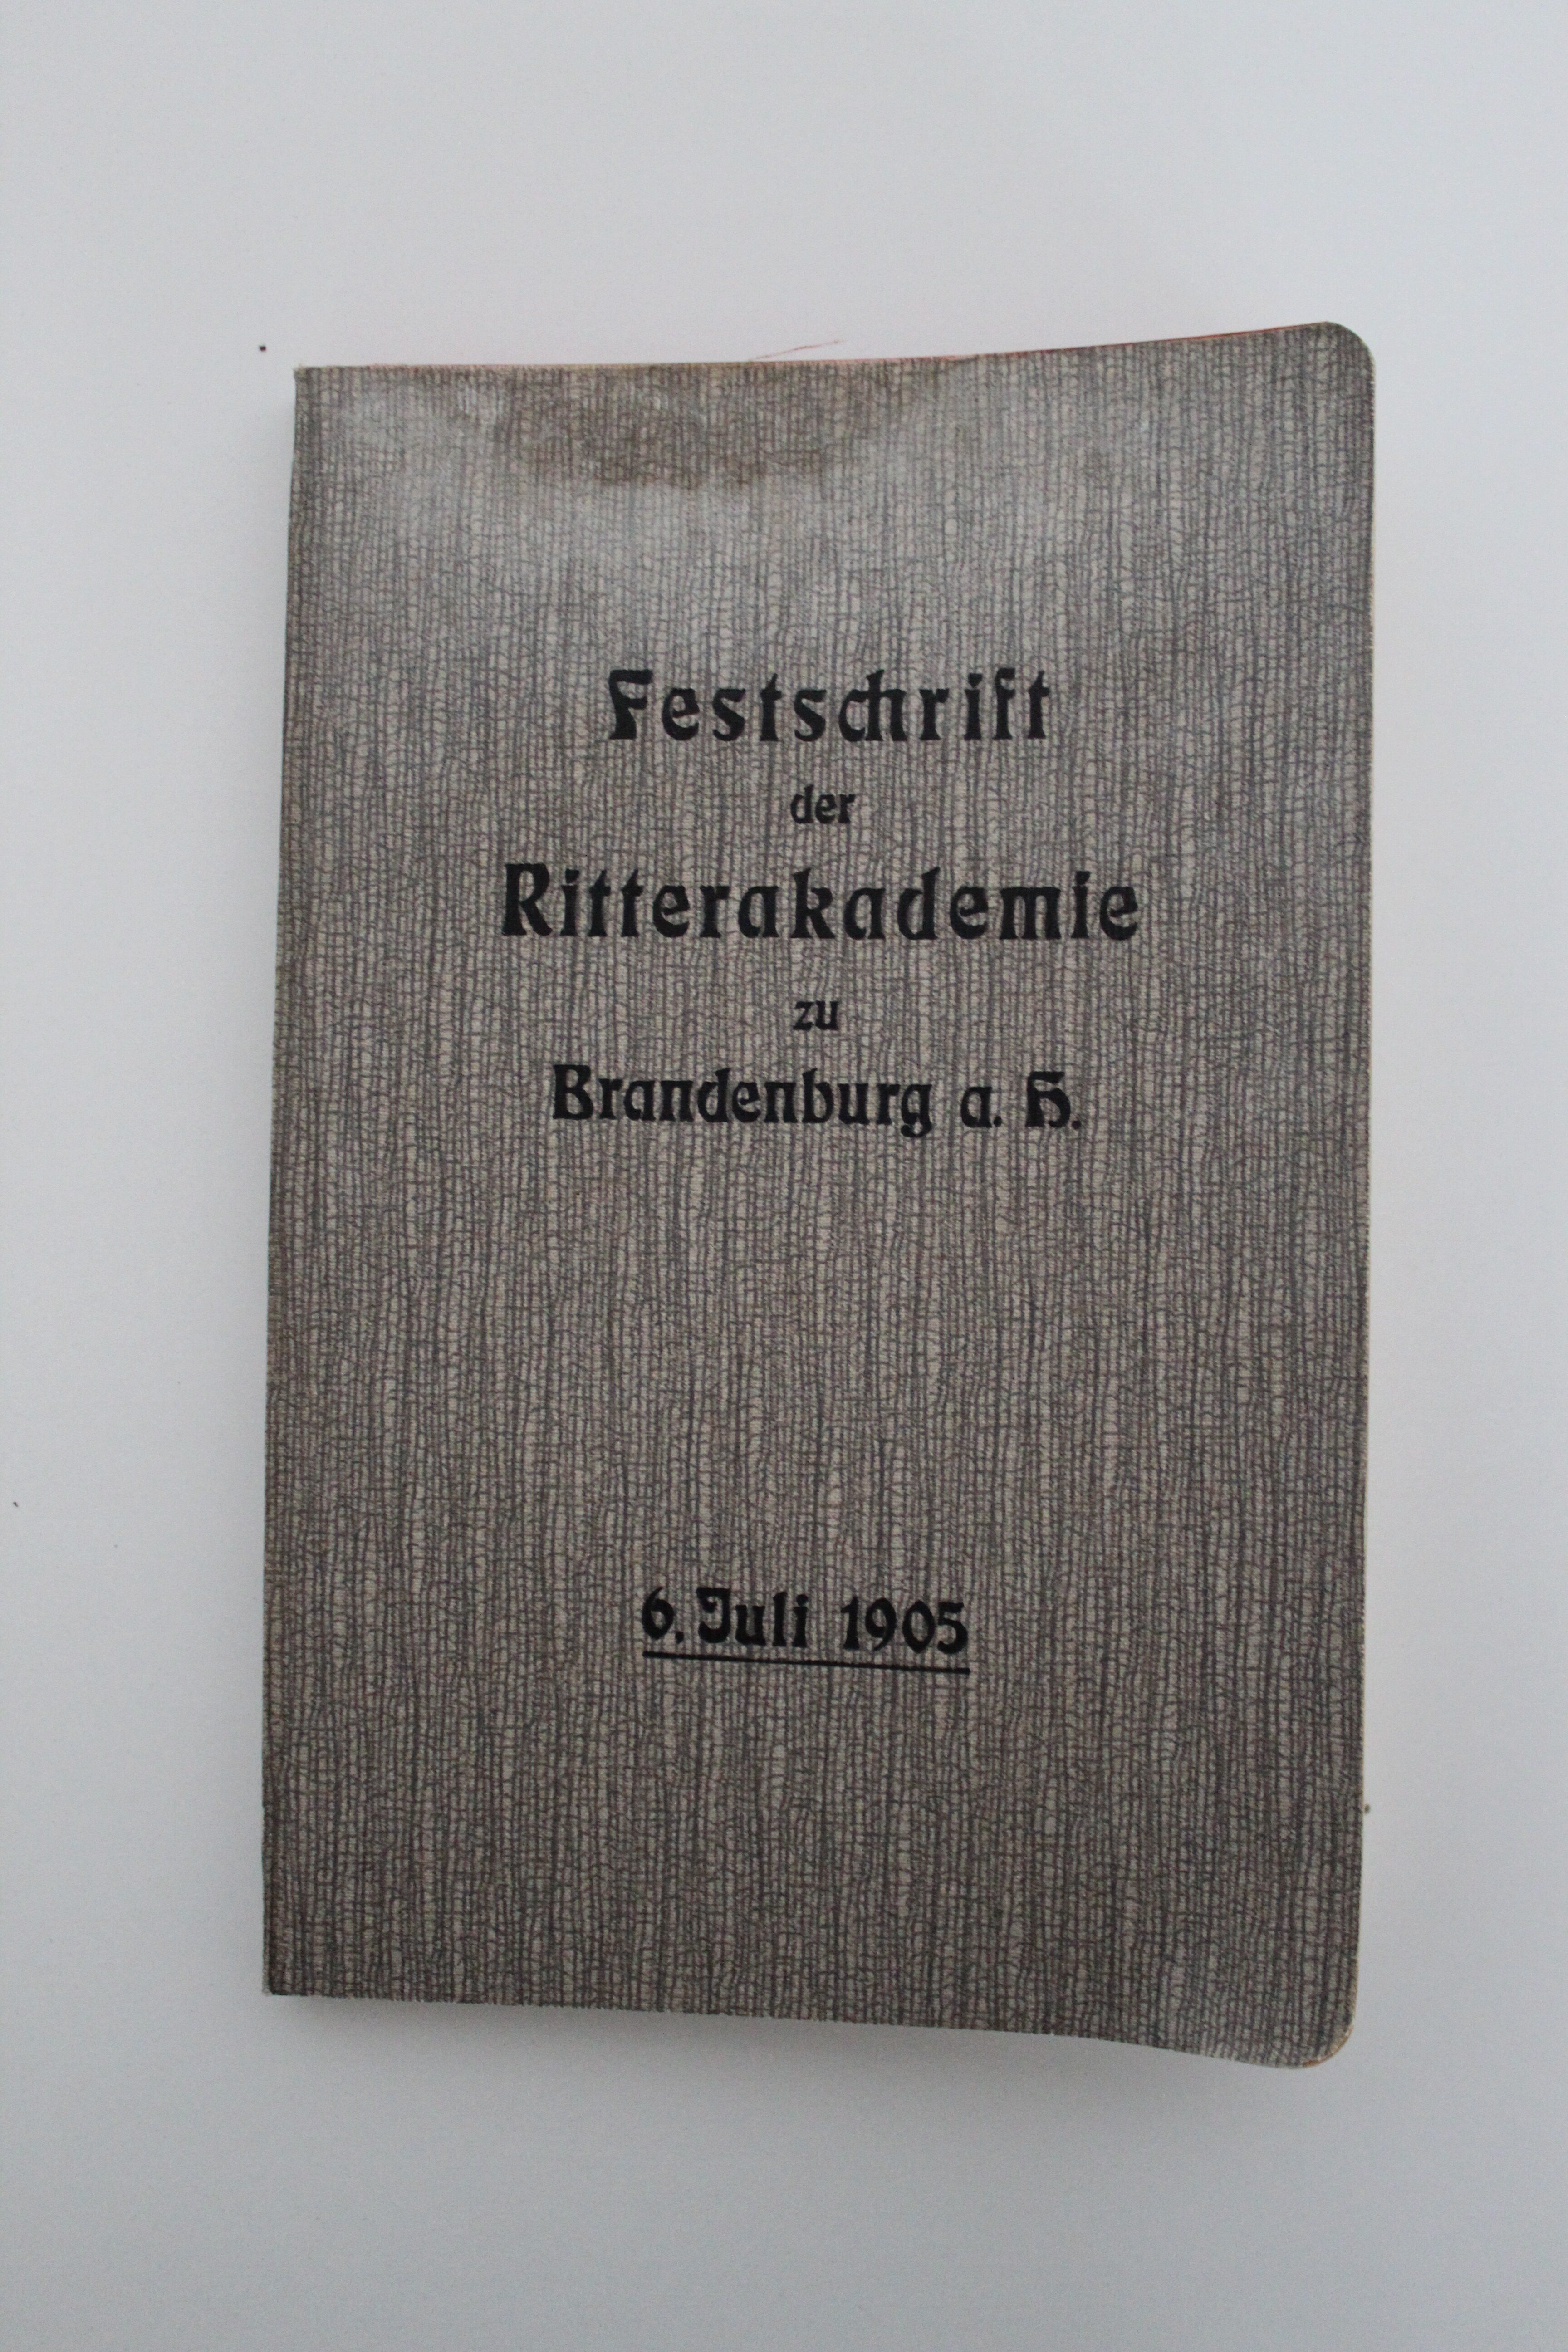 Festschrift der Ritterakademie zu Brandenburg a.H. 6. Juli 1905 (Reckahner Museen CC BY-NC-SA)